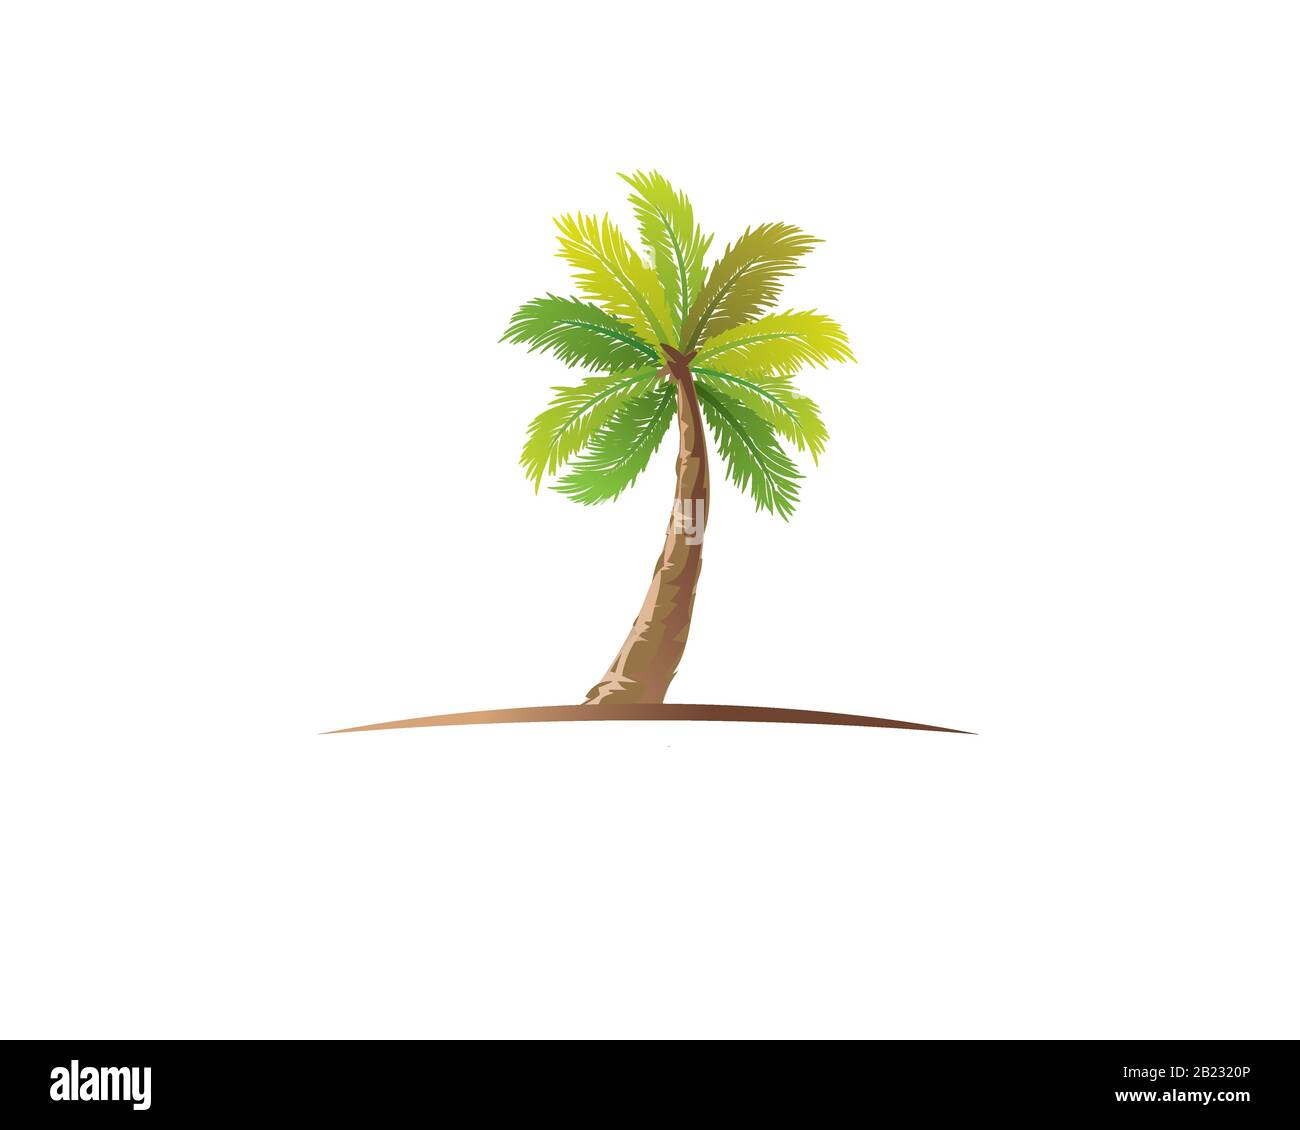 Eine Palme auf gebogenem Inselboden im Wasserfarben-Stil Stock Vektor